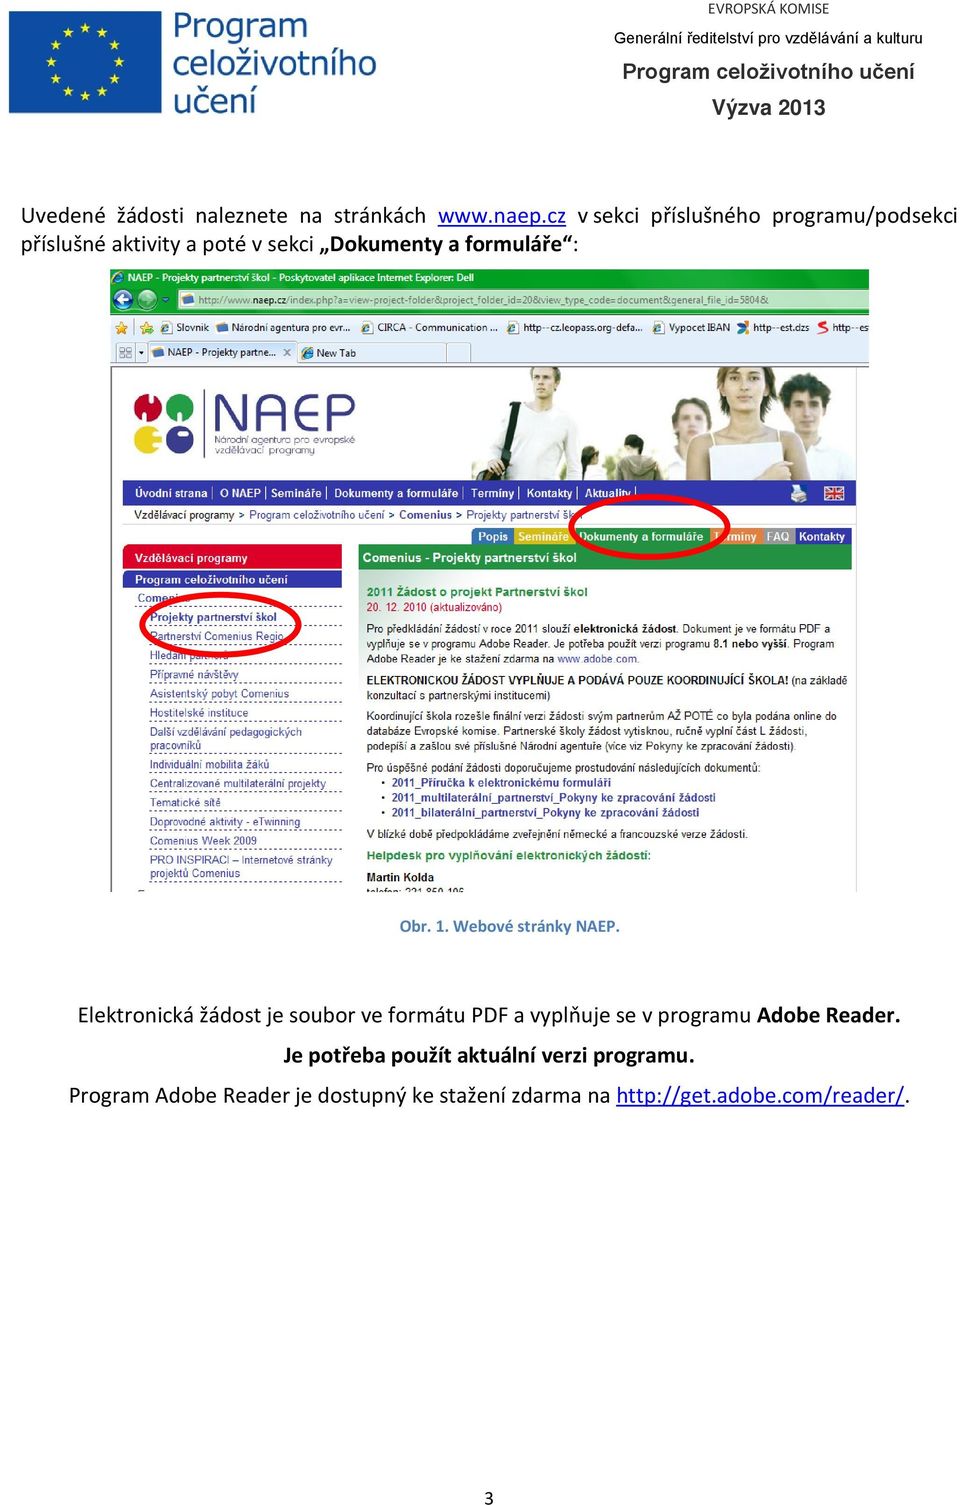 : Obr. 1. Webové stránky NAEP.